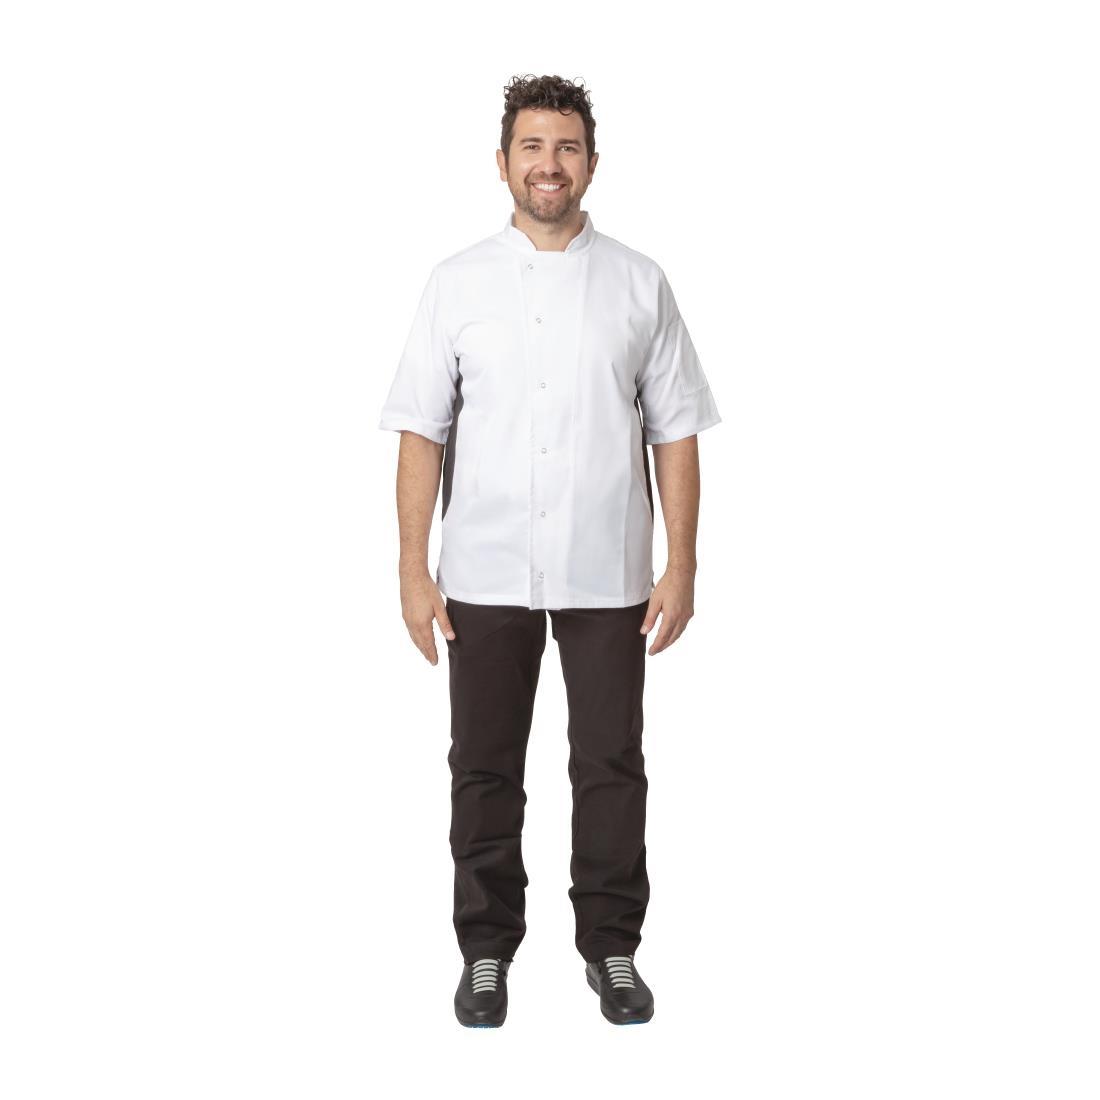 Whites Nevada Unisex Chefs Jacket Short Sleeve Black and White M - A928-M  - 2